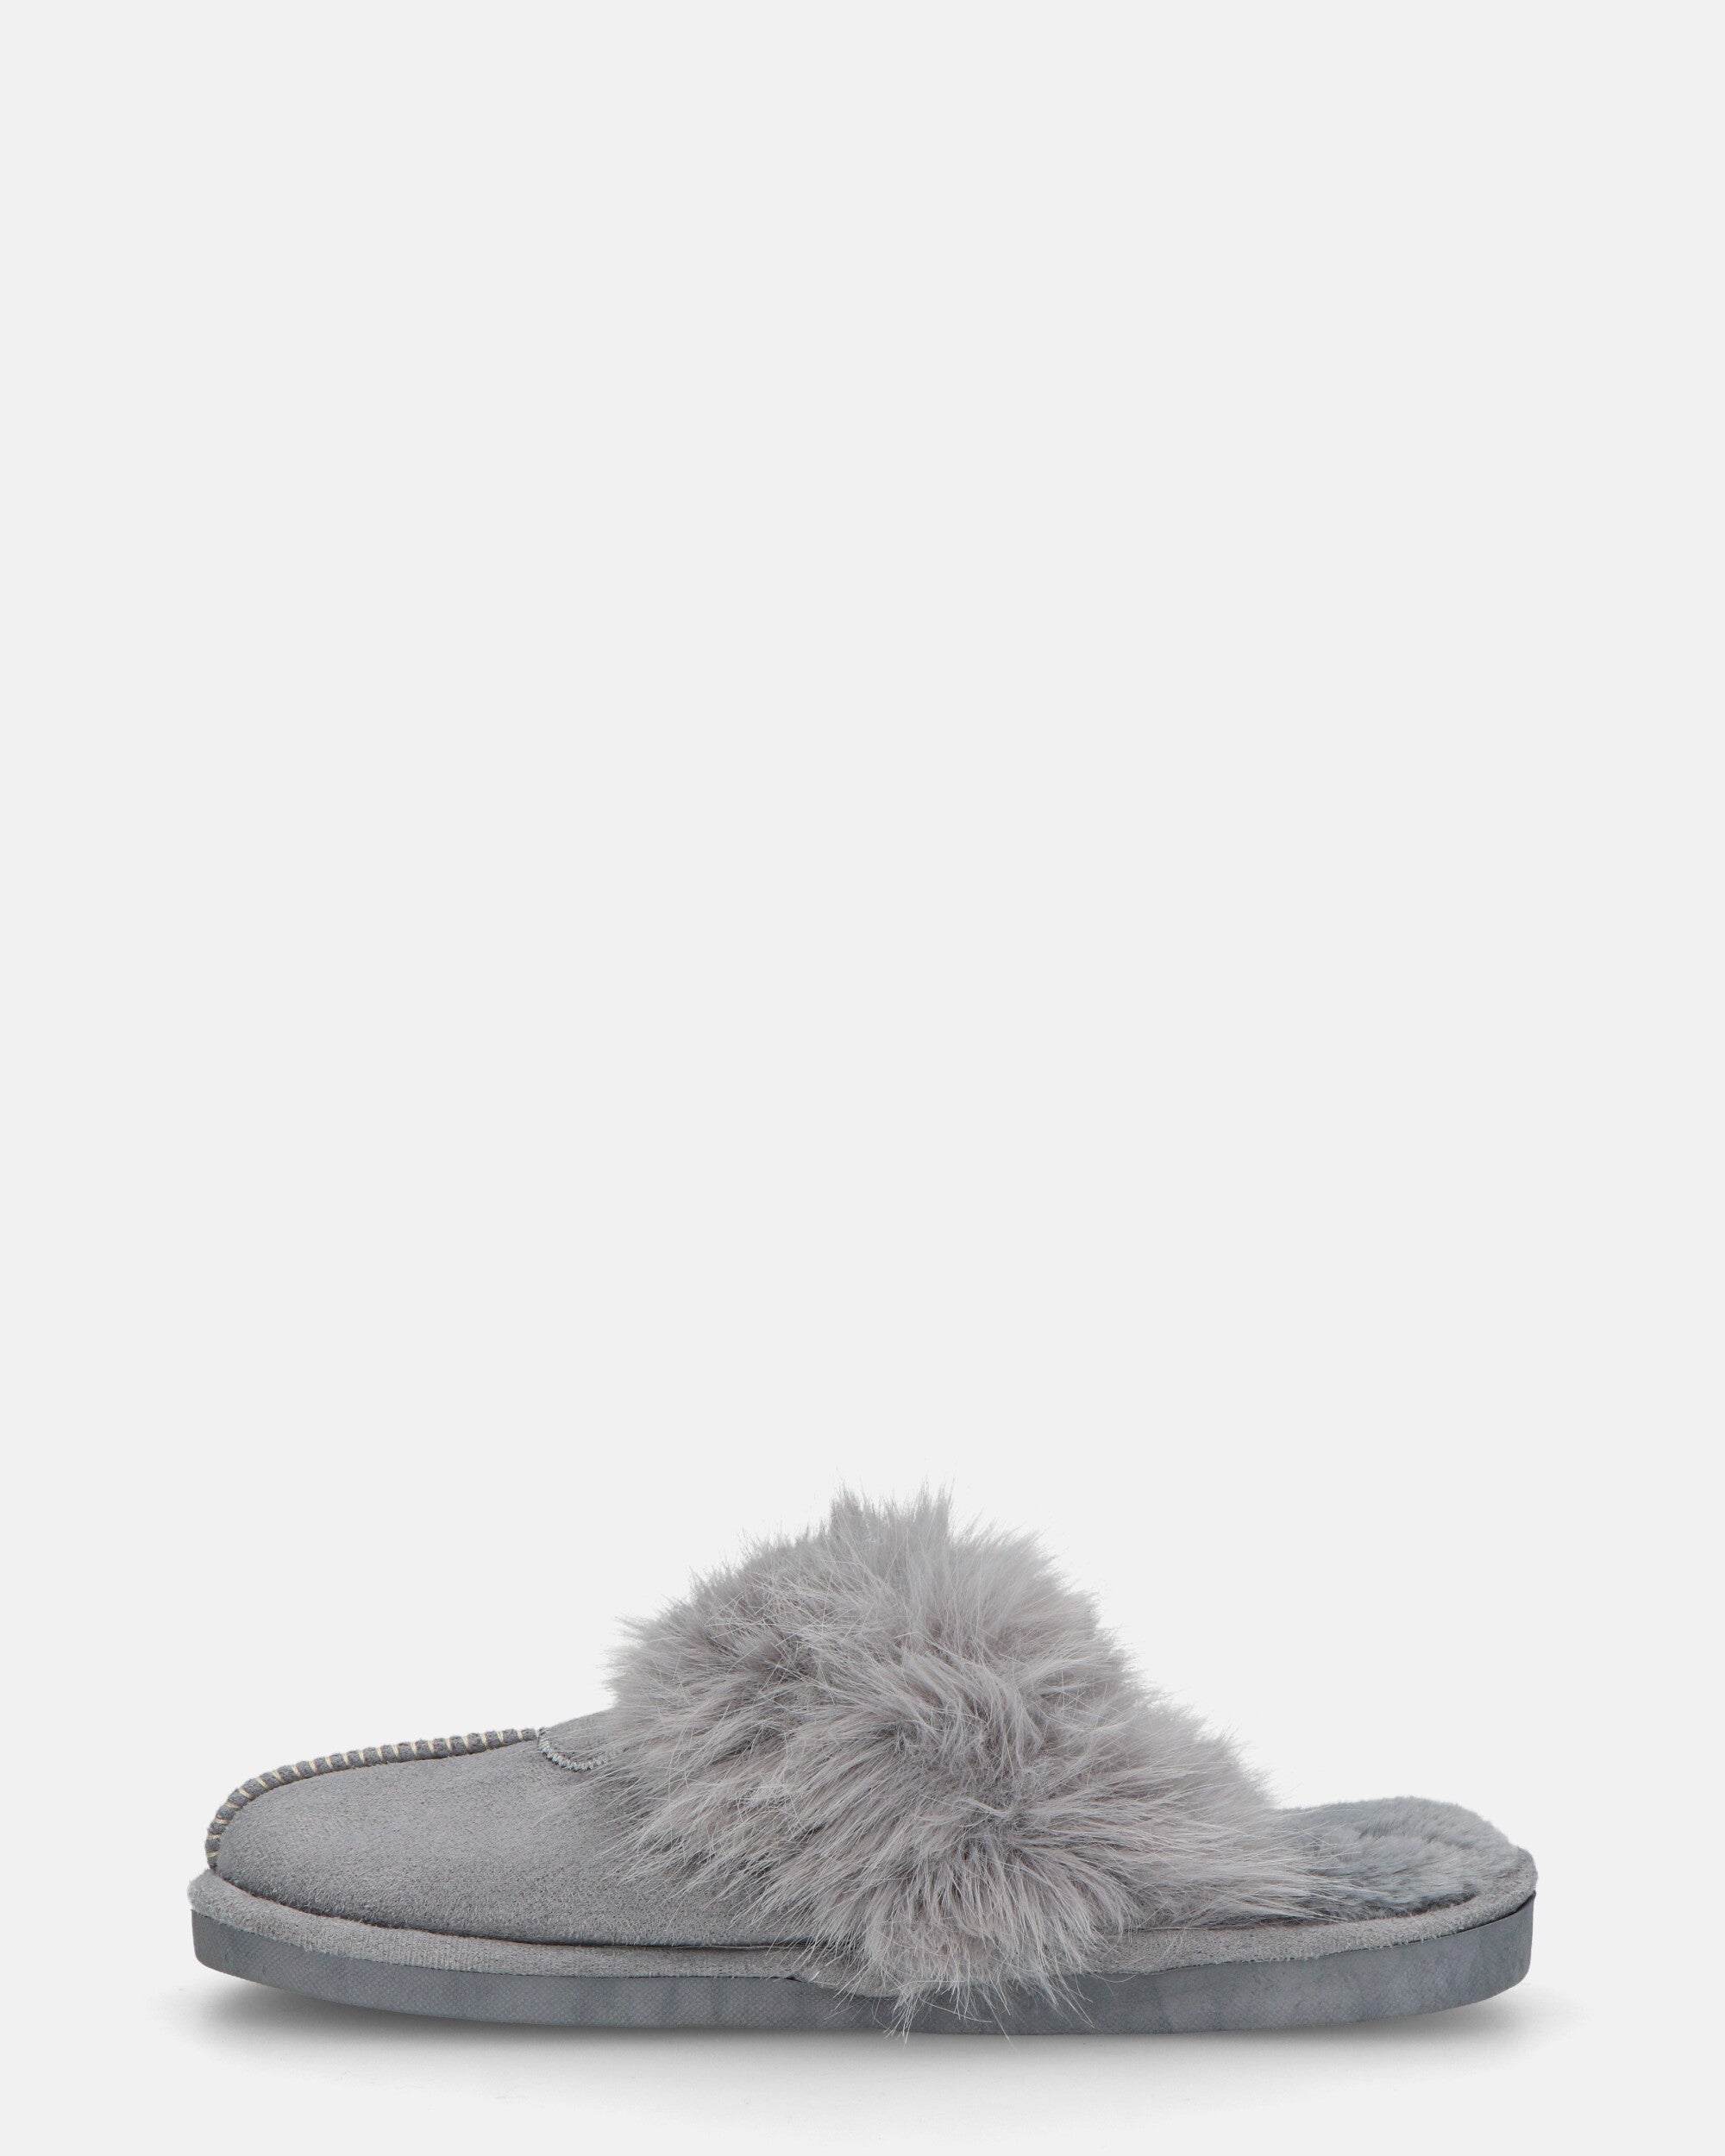 MIDORI - chaussons gris avec fourrure et daim